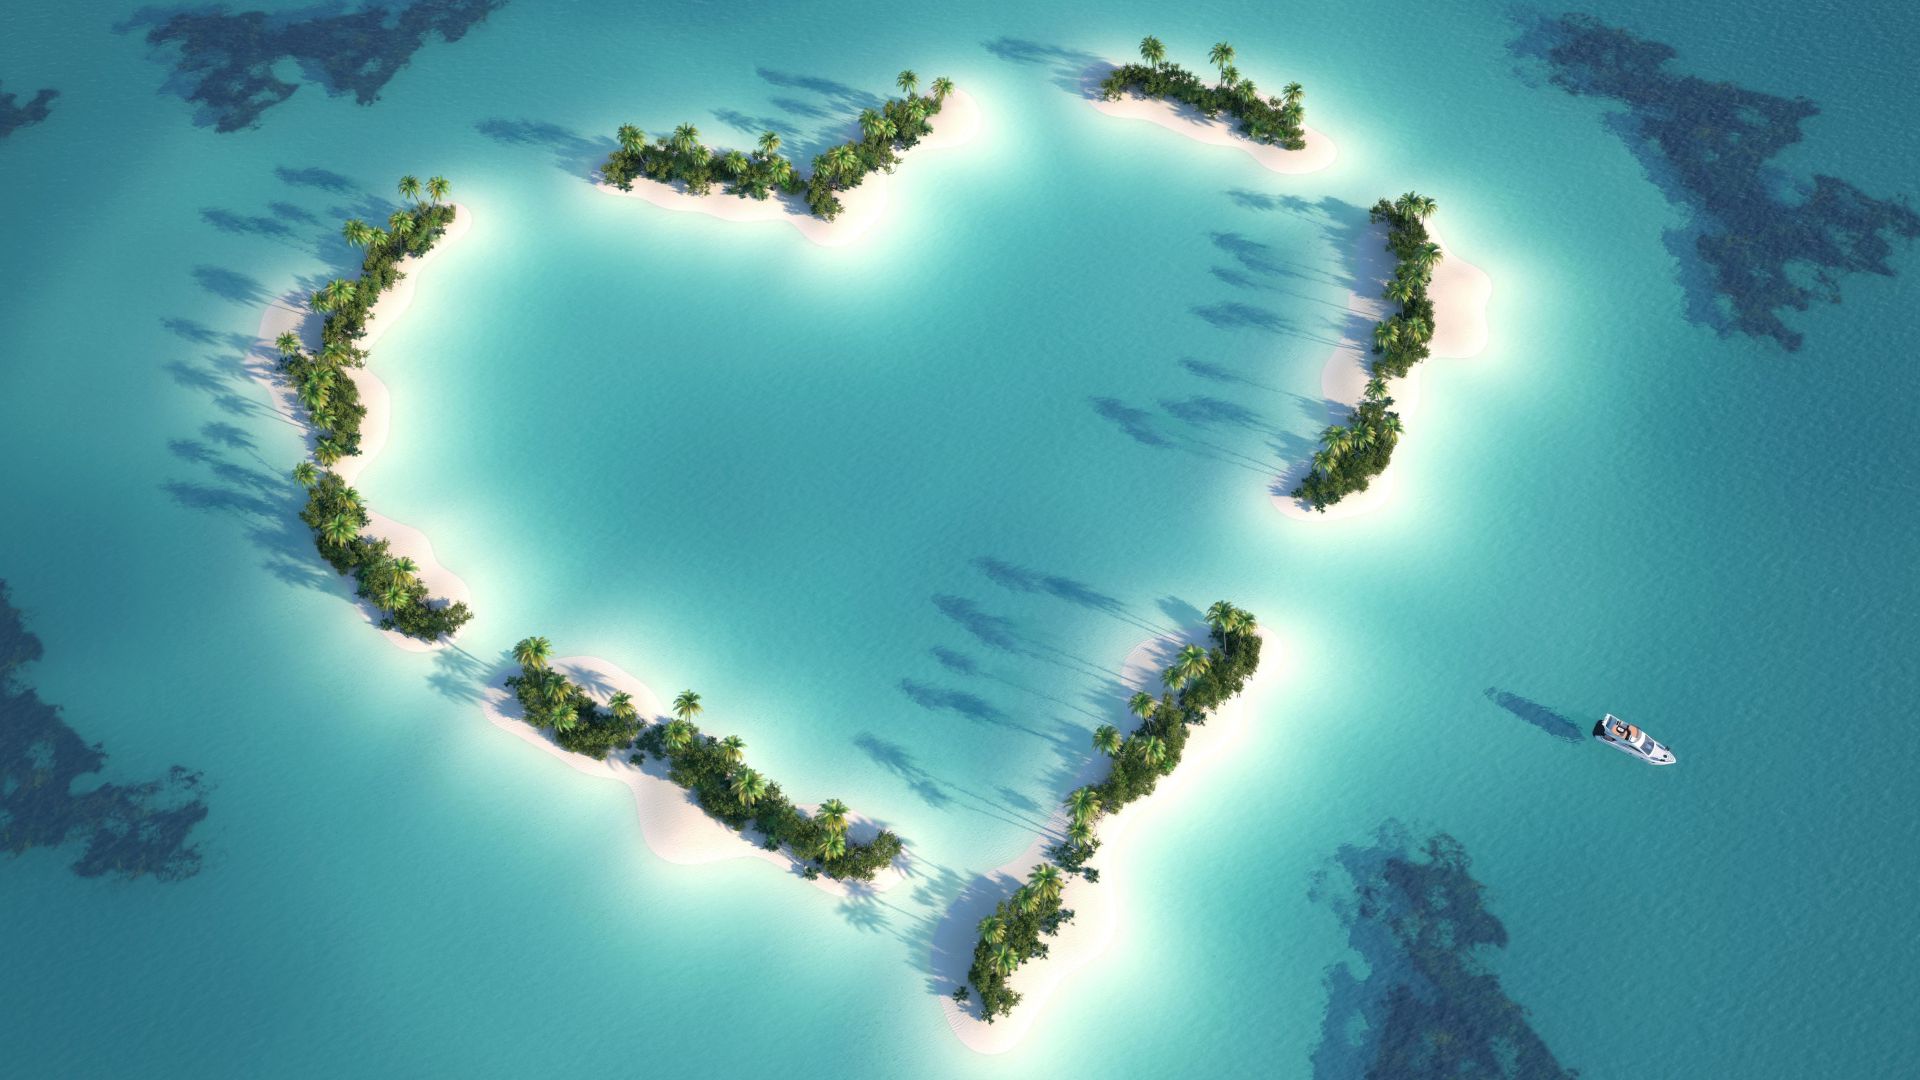 Мальдивы, 5k, 4k, Индийский Океан, Лучшие пляжи мира, остров, пальмы, любовь, Maldives, 5k, 4k wallpaper, Indian Ocean, Best Beaches in the World, island, palms, love (horizontal)